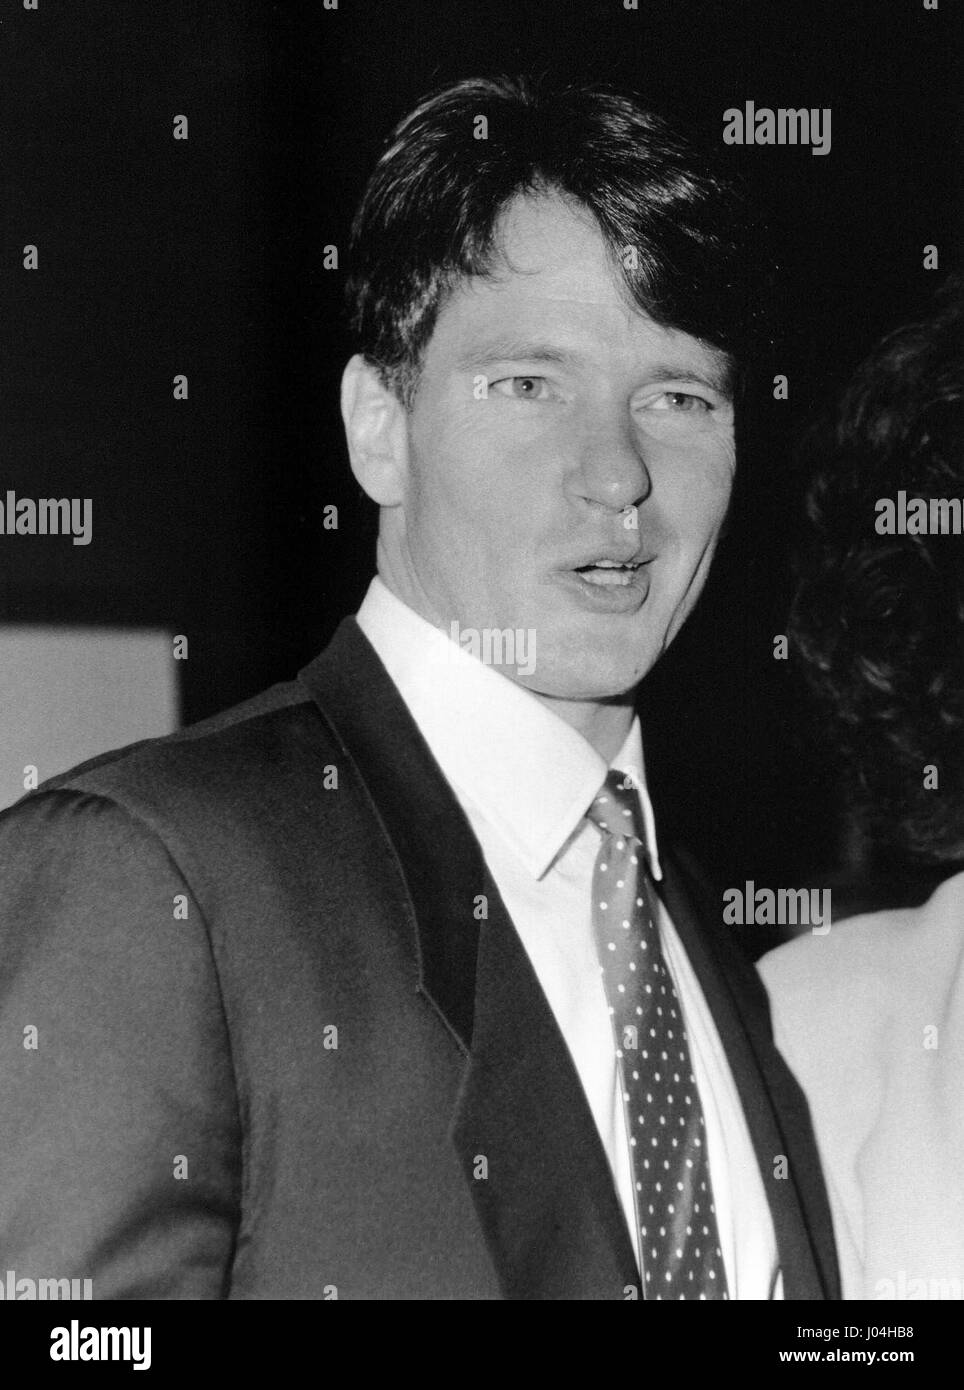 Gordon Thompson, attore canadese, assiste una varietà Club pranzo a Londra in Inghilterra il 27 maggio 1989. Egli è il più noto per il suo ruolo nella lunga serie televisiva Dynasty. Foto Stock